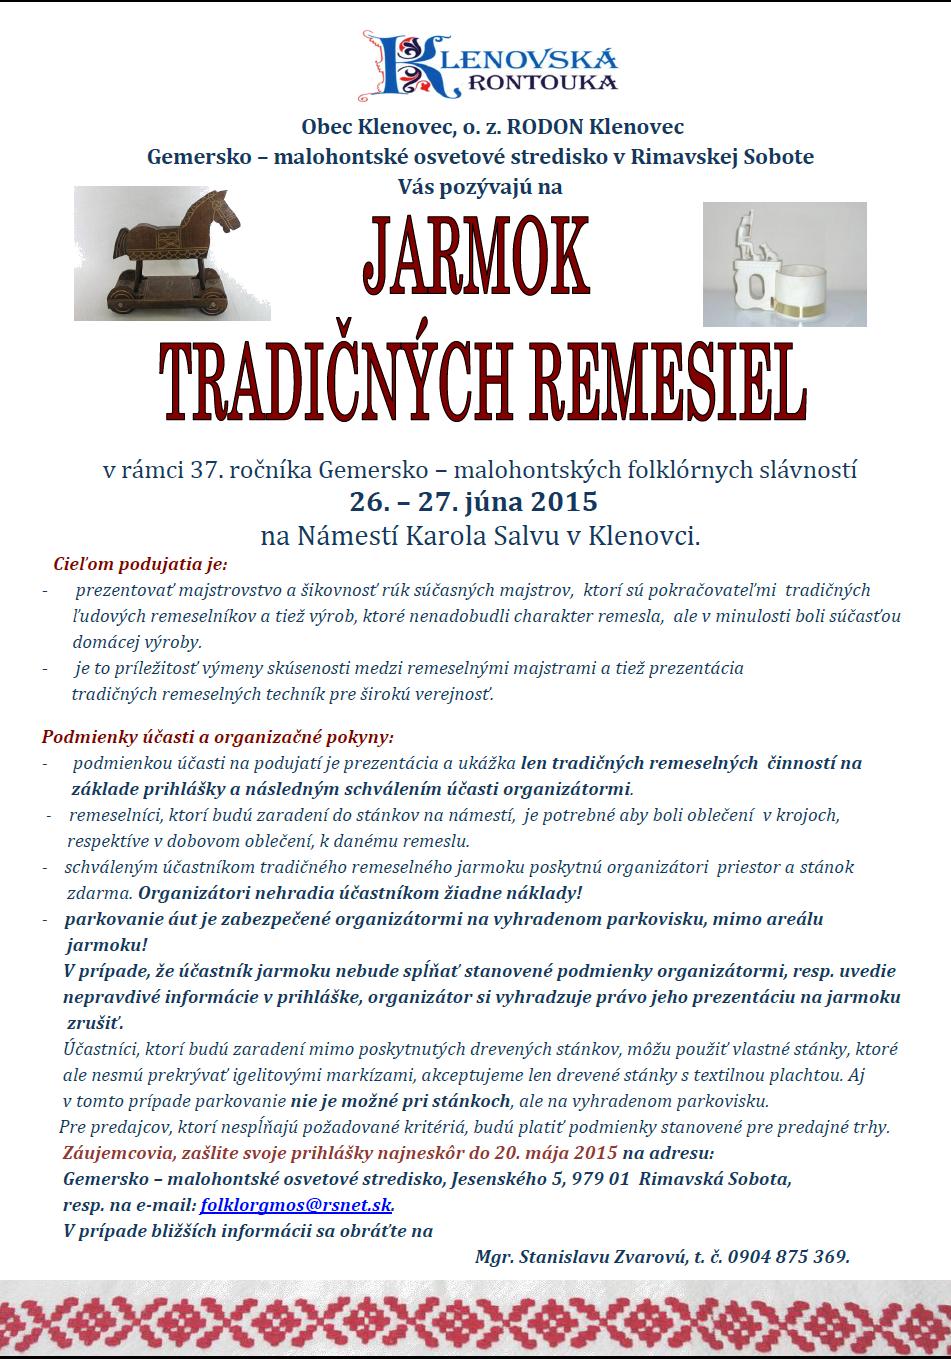 Jarmok tradinch remesiel Klenovec 2015